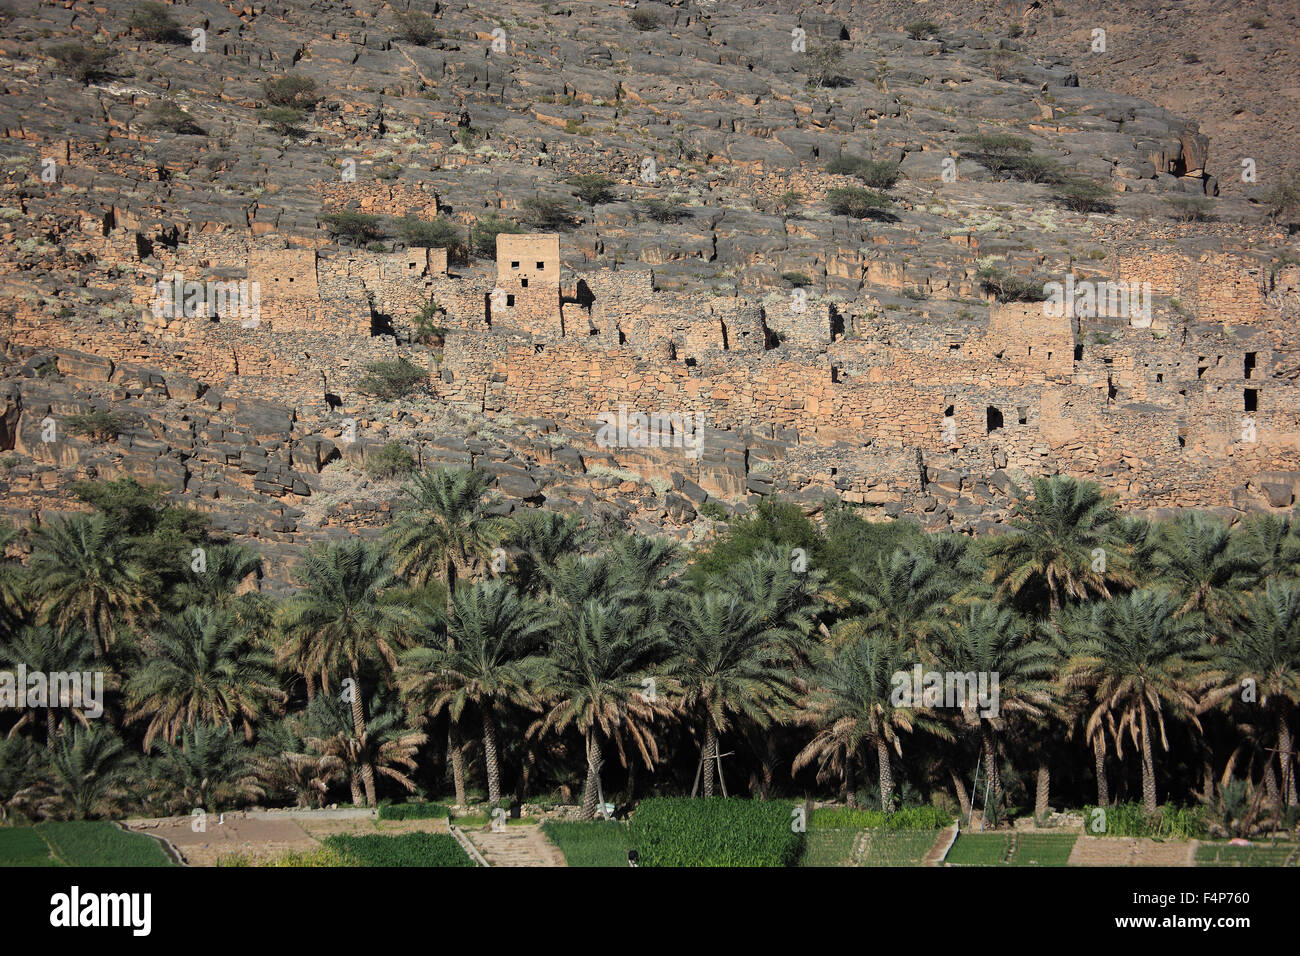 Casas desoladas del asentamiento histórico ghoul en el Jebel Shams, Omán Foto de stock